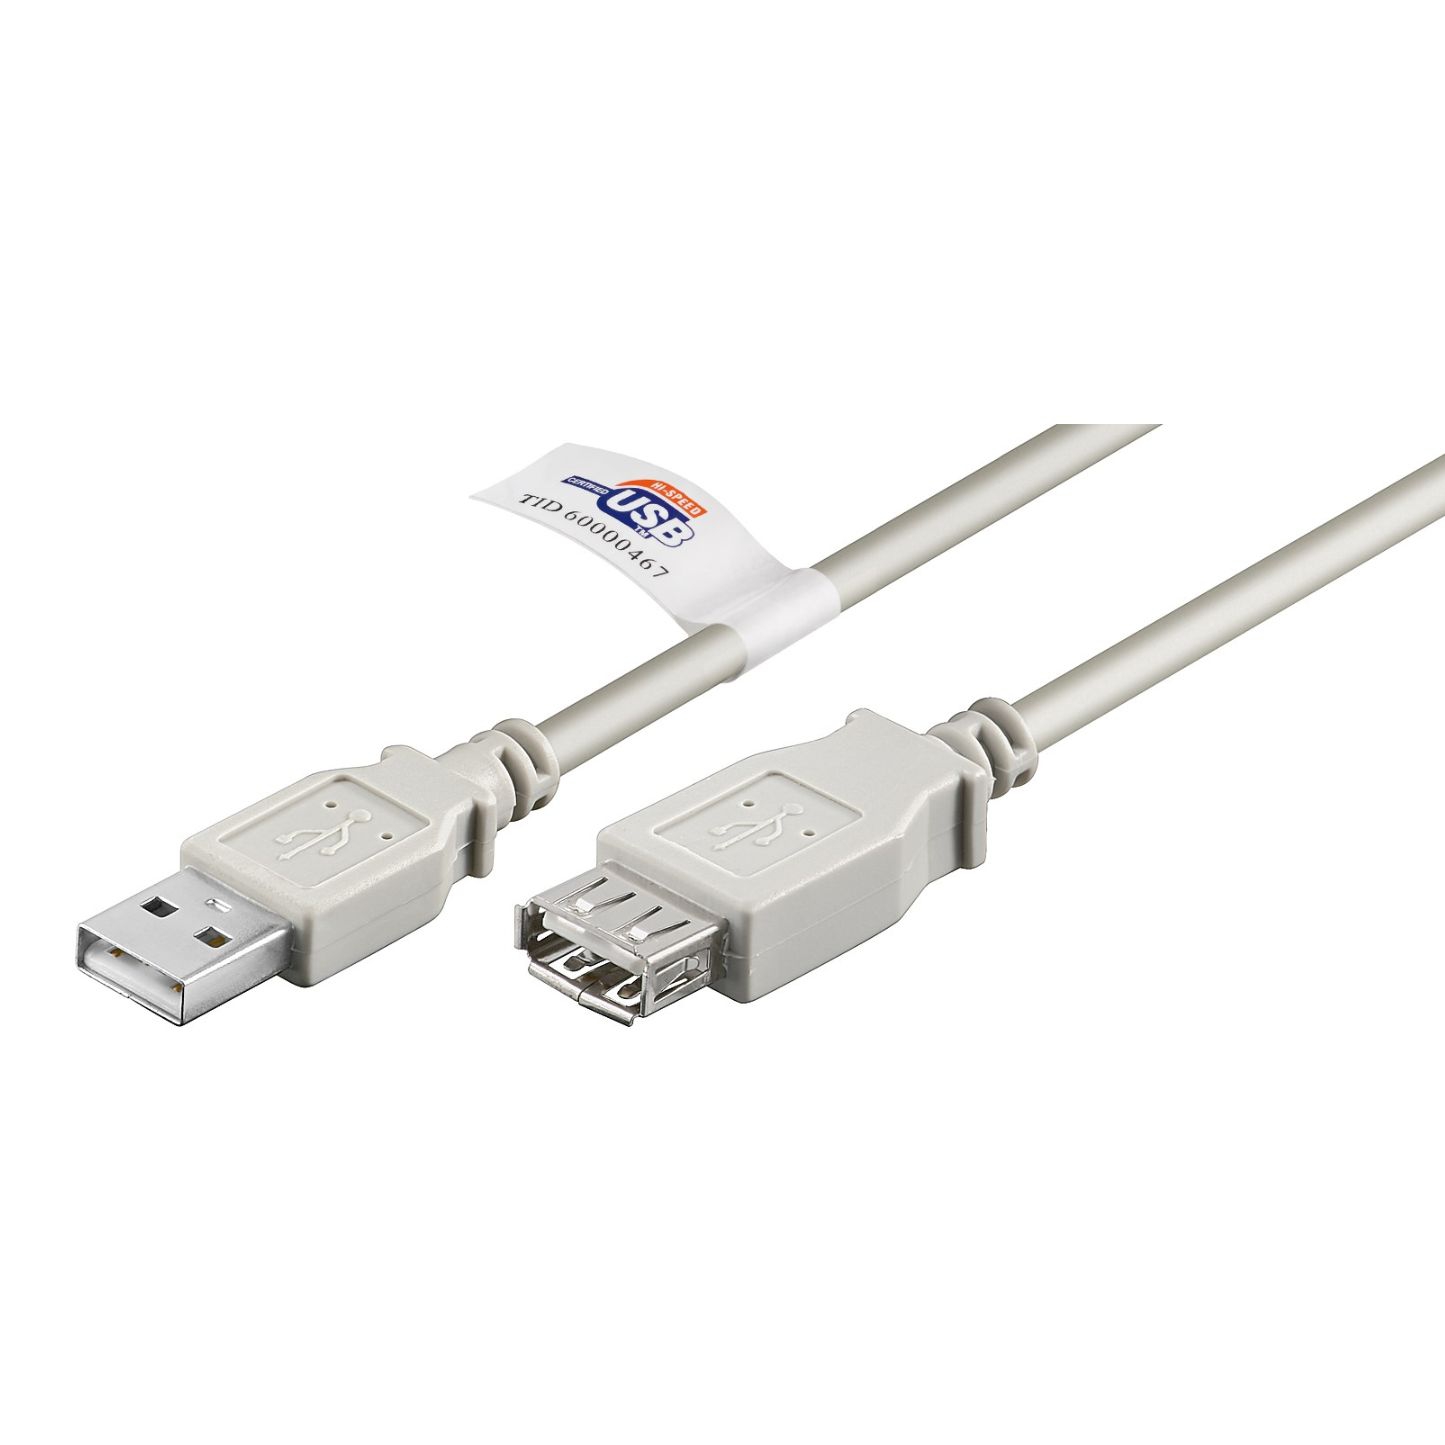 Rallonge USB 2.0 AWG28 AWG24 gris avec certification 180cm